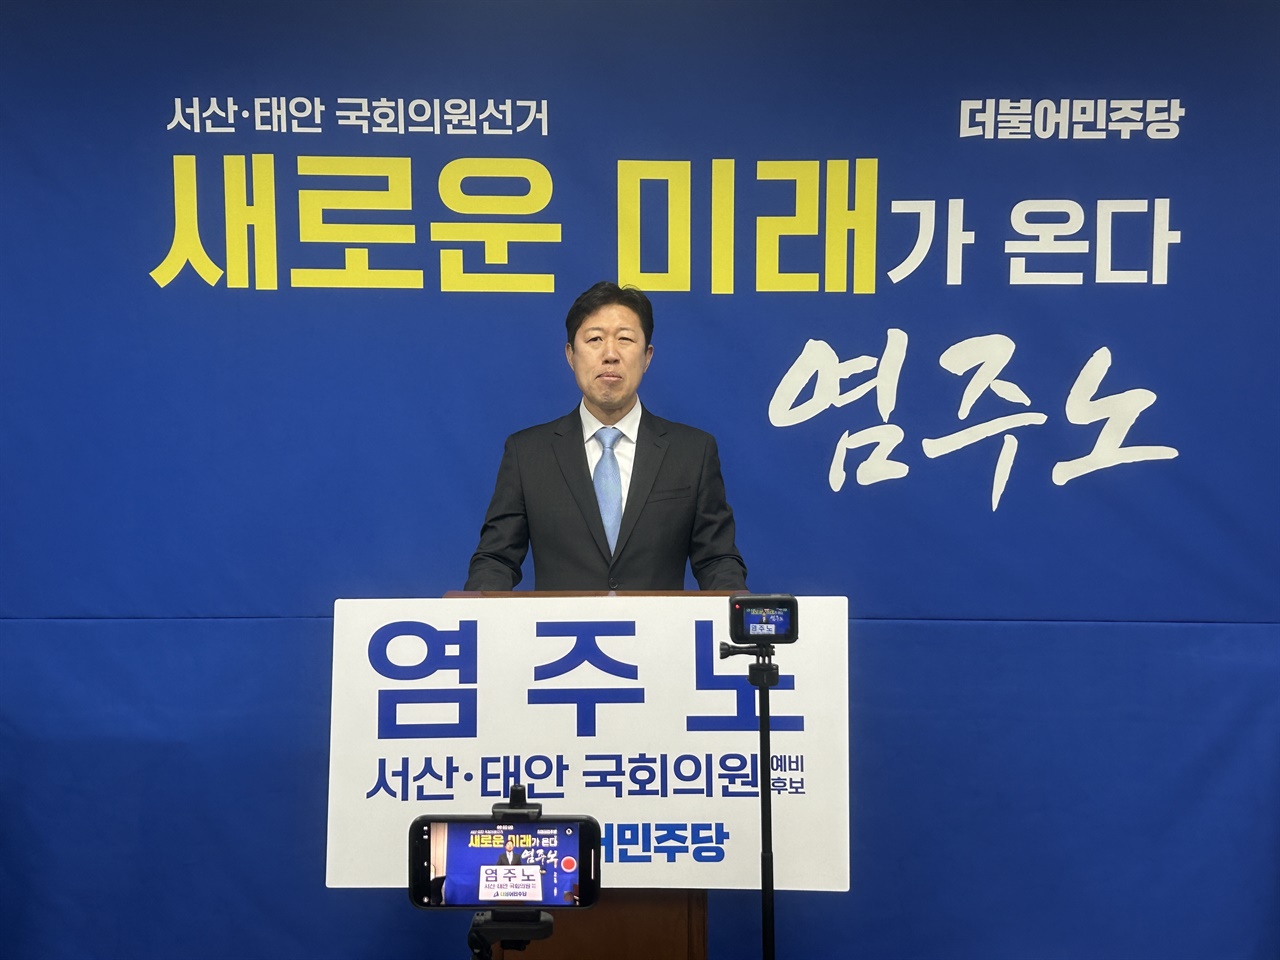 염주노(52) 민주당 전략기획위원회 부위원장이 22대 총선 서산·태안 출마를 공식 선언했다.